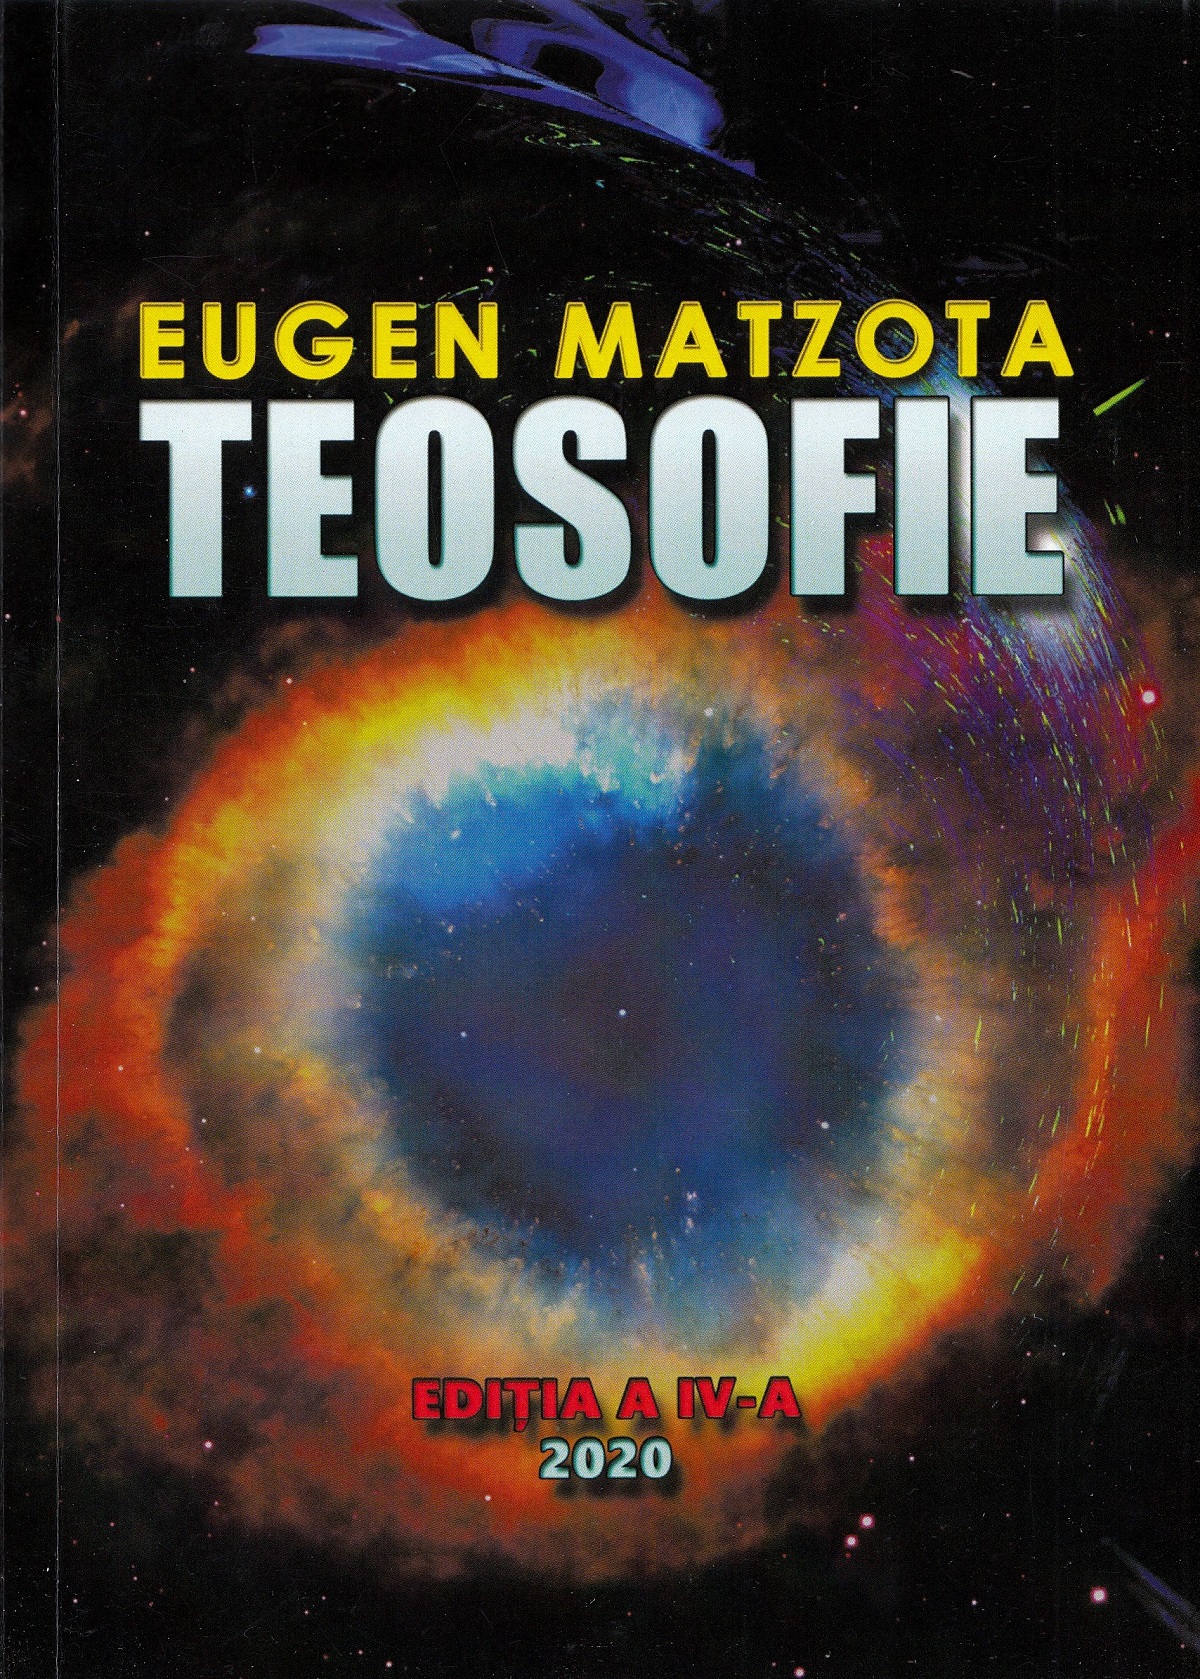 Teosofie - Eugen Matzota